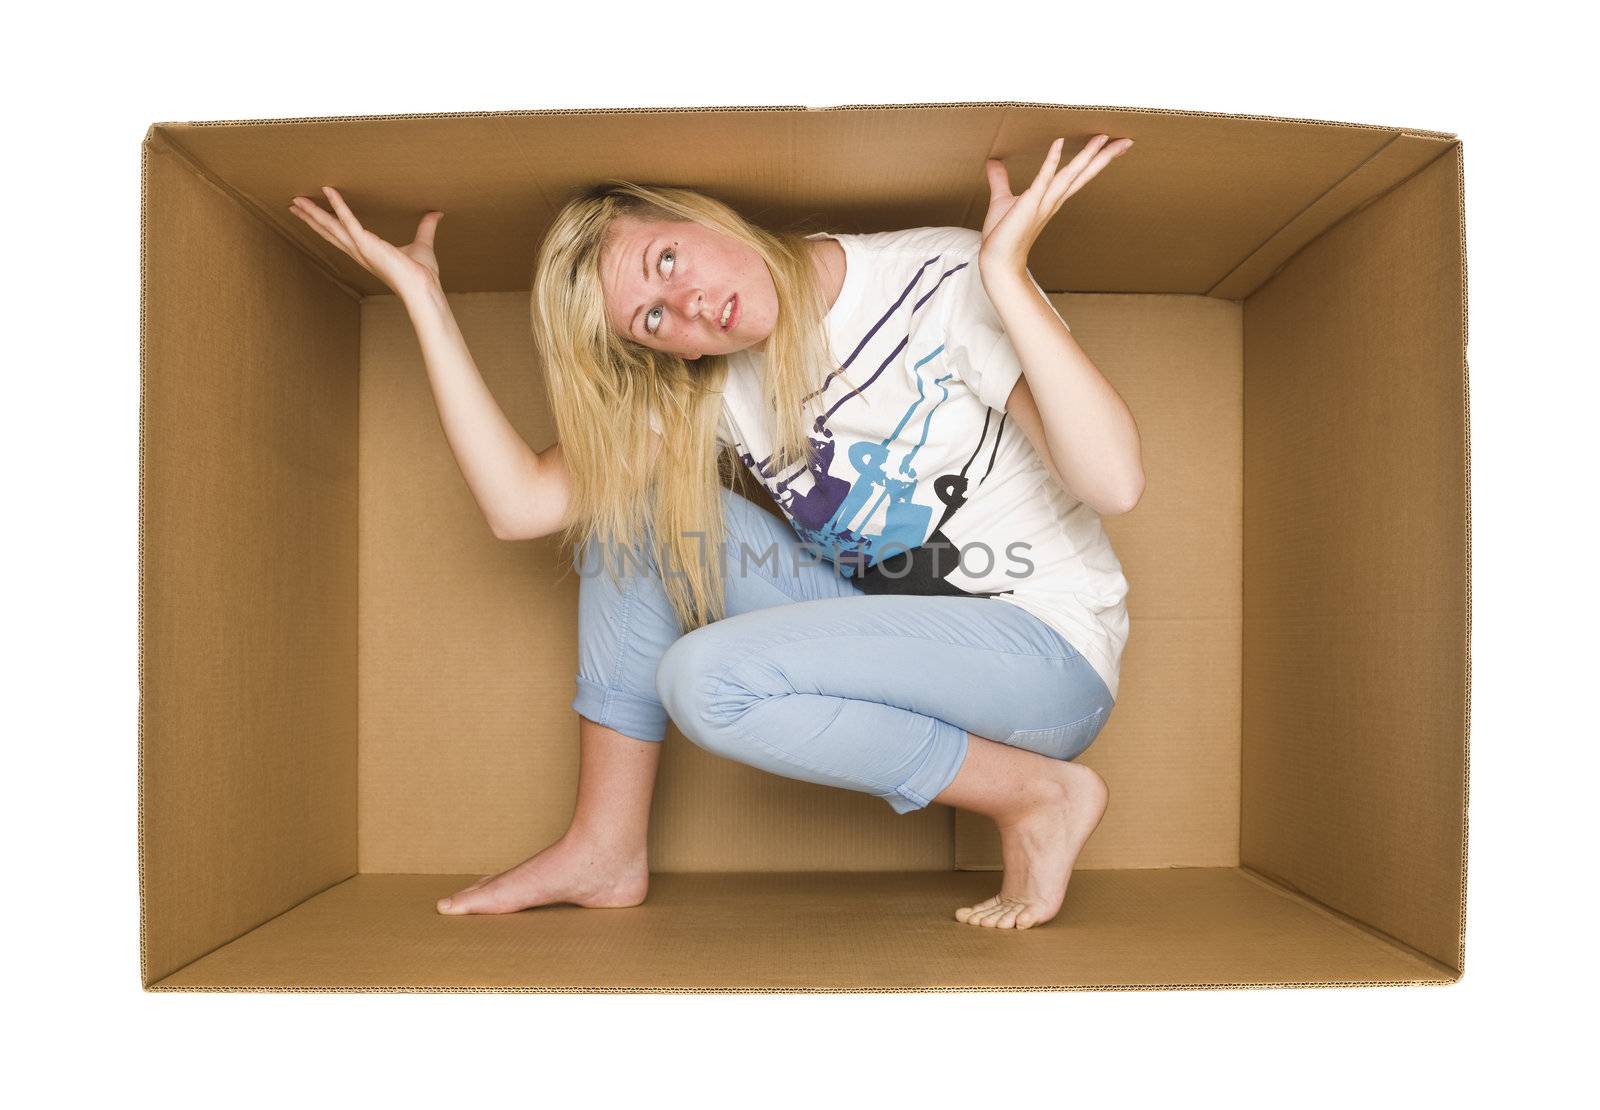 Woman inside a Cardboardbox by gemenacom